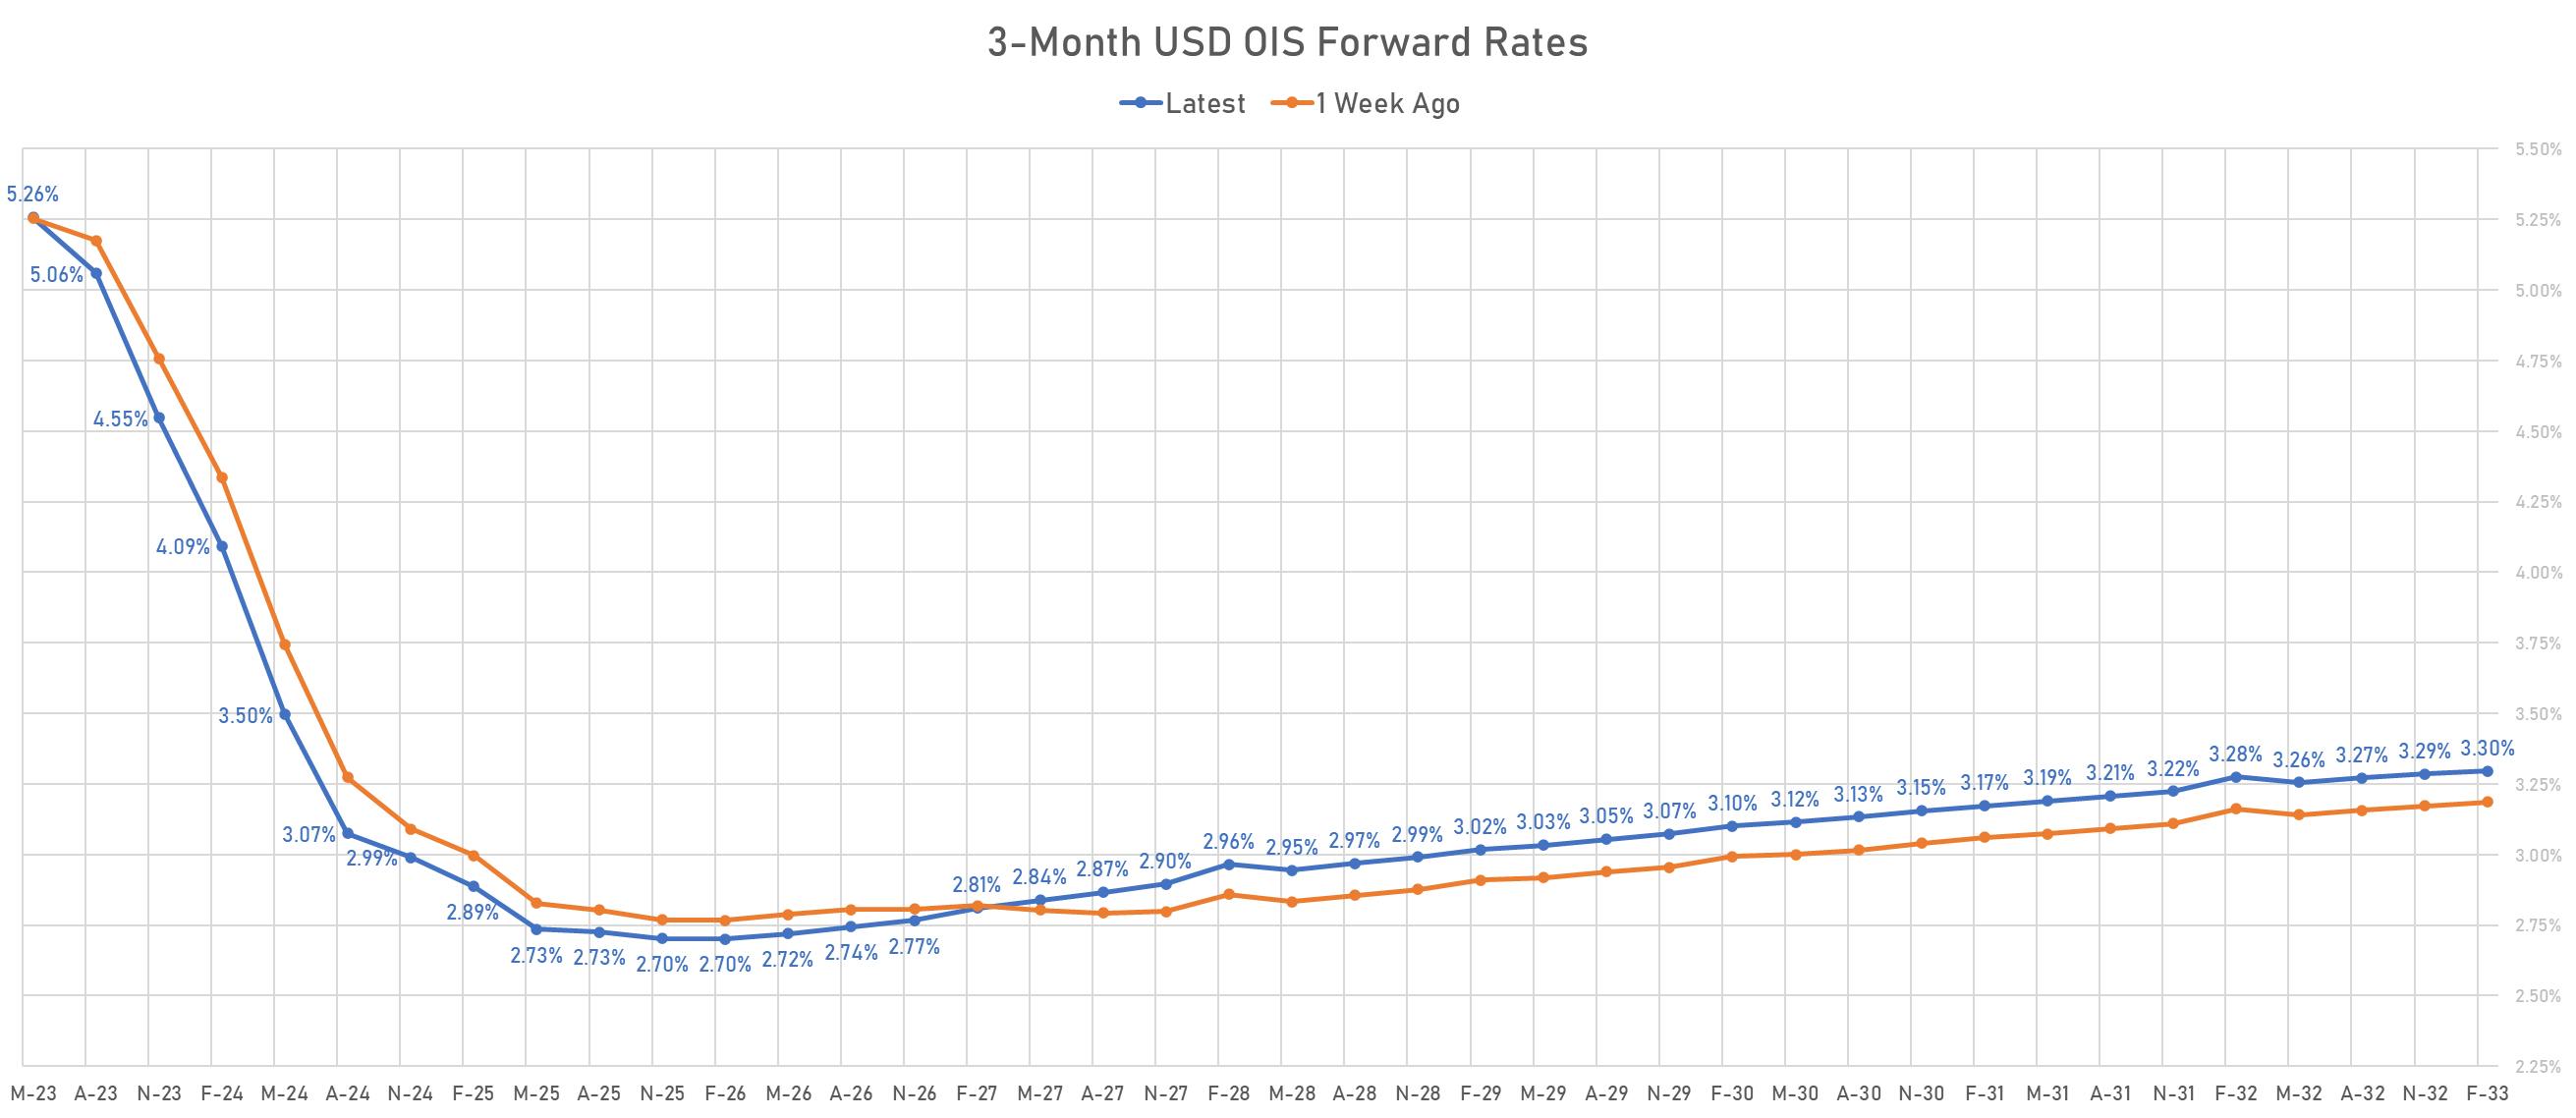 3M USD OIS forward rates curve | Sources: phipost.com, Refinitiv data